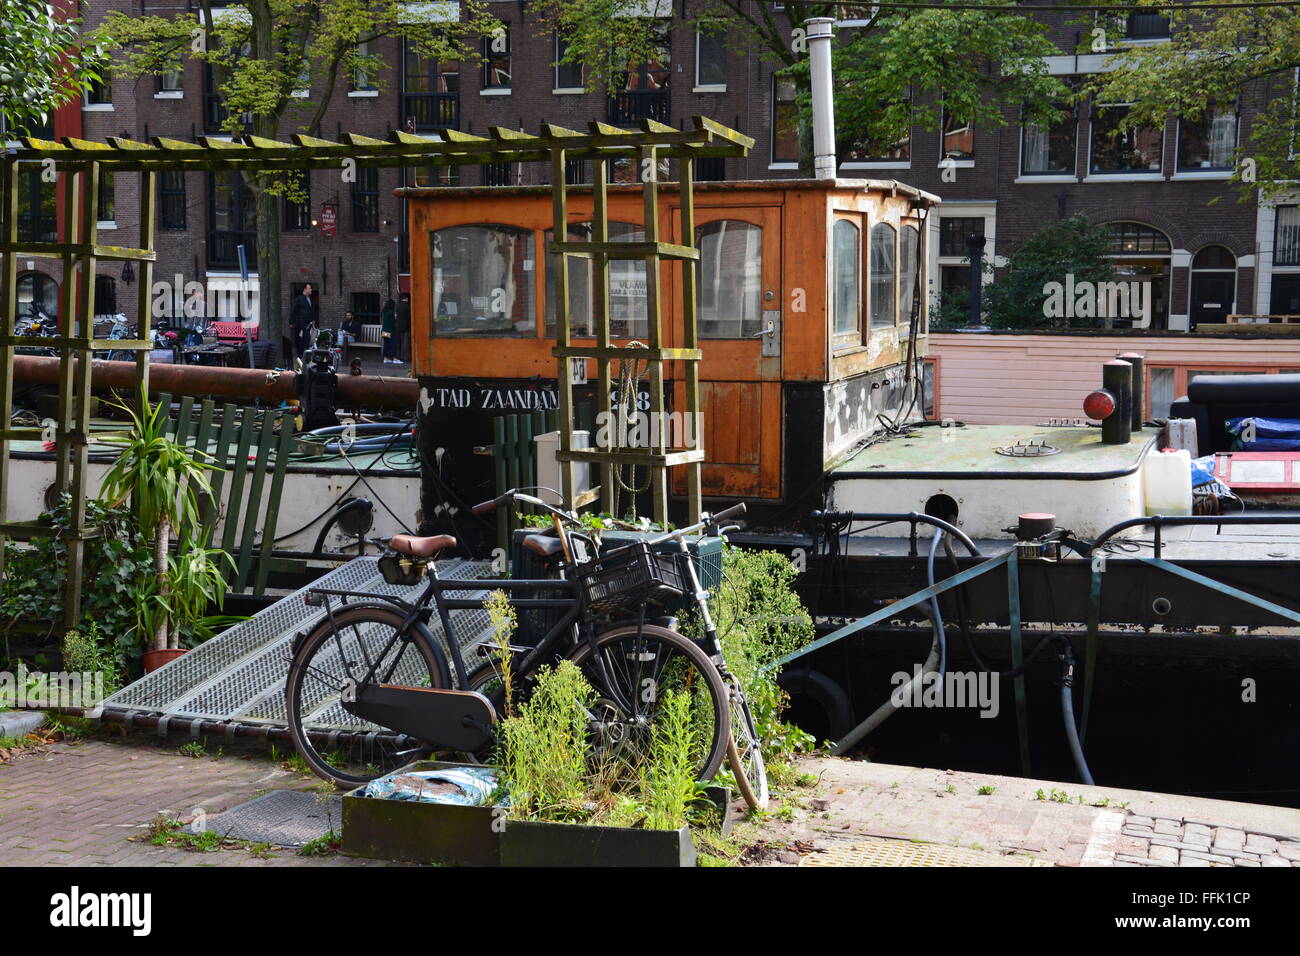 Close up of canal boat accueil avec des vélos à l'avant. Bateaux du canal peut être très soignés et sont un mode de vie à Amsterdam. Banque D'Images